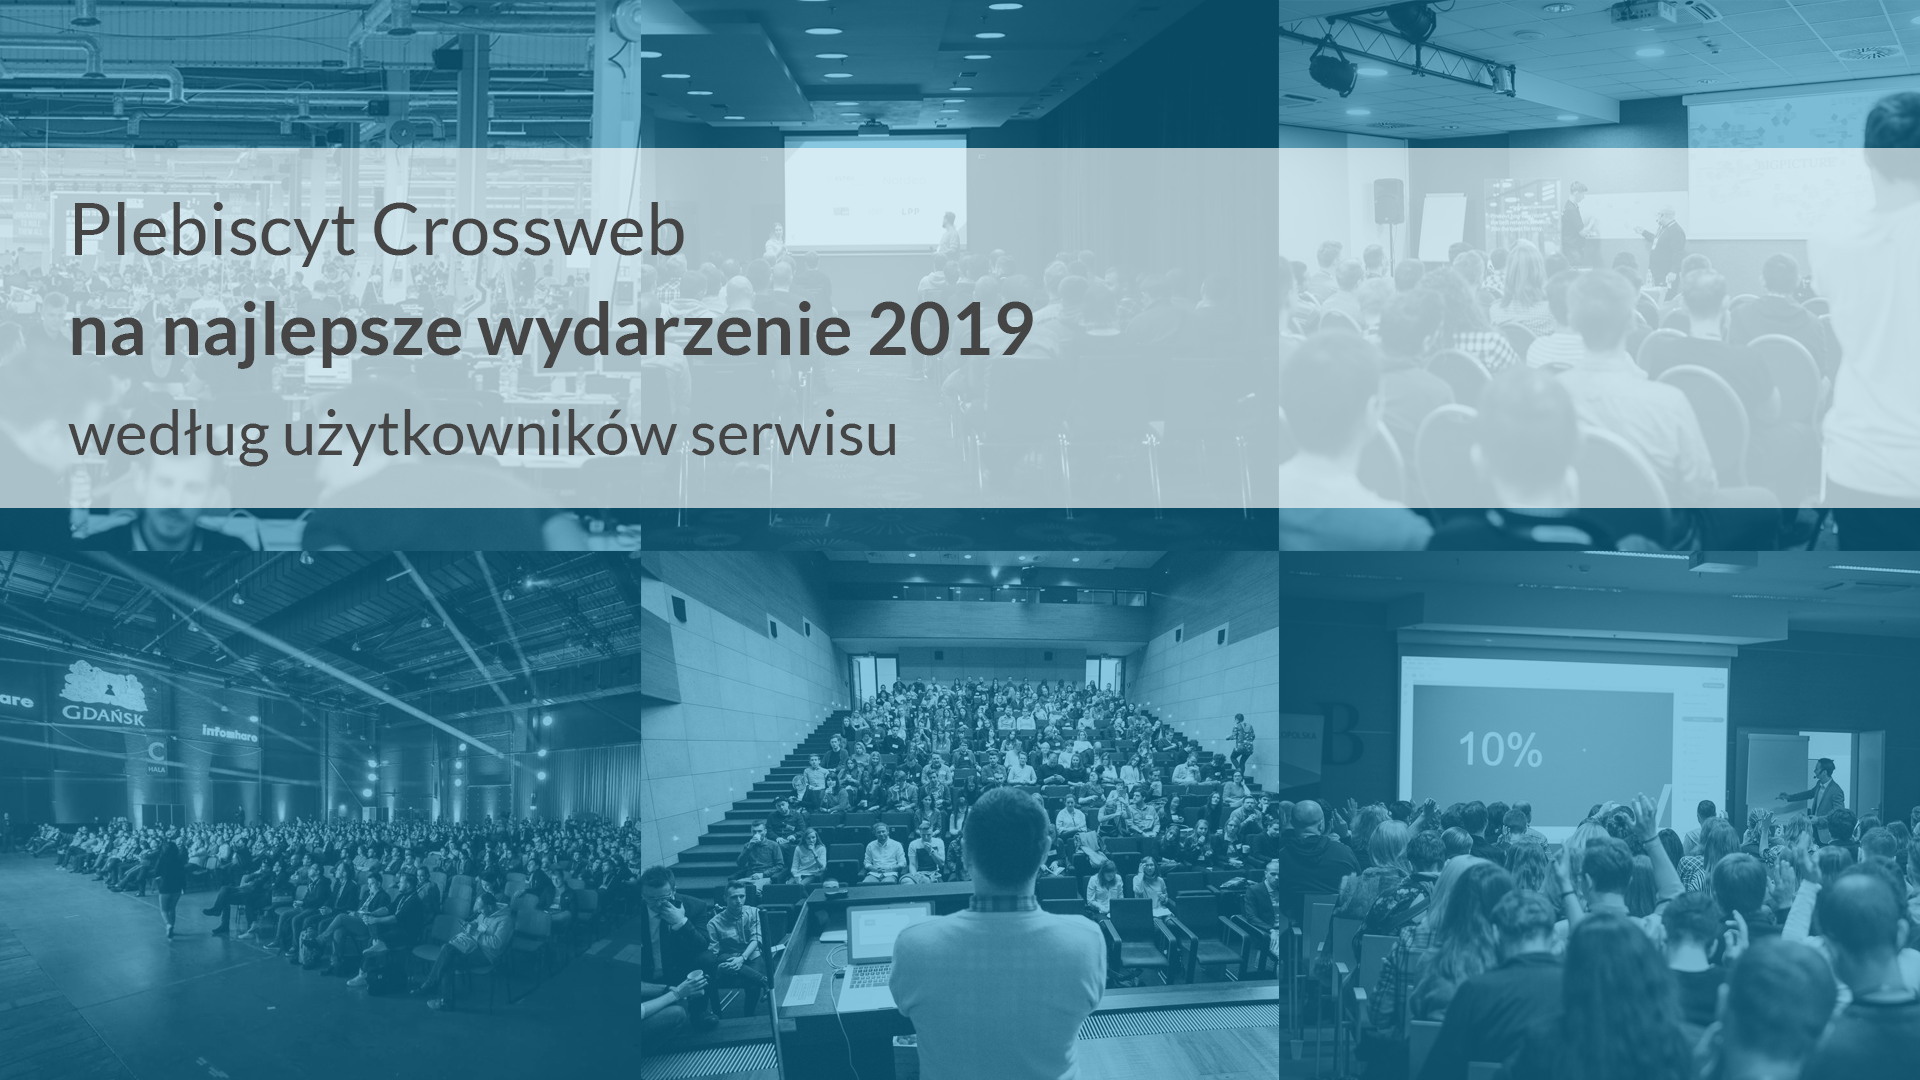 Plebiscyt Crossweb na najlepsze wydarzenie 2019 według użytkowników serwisu